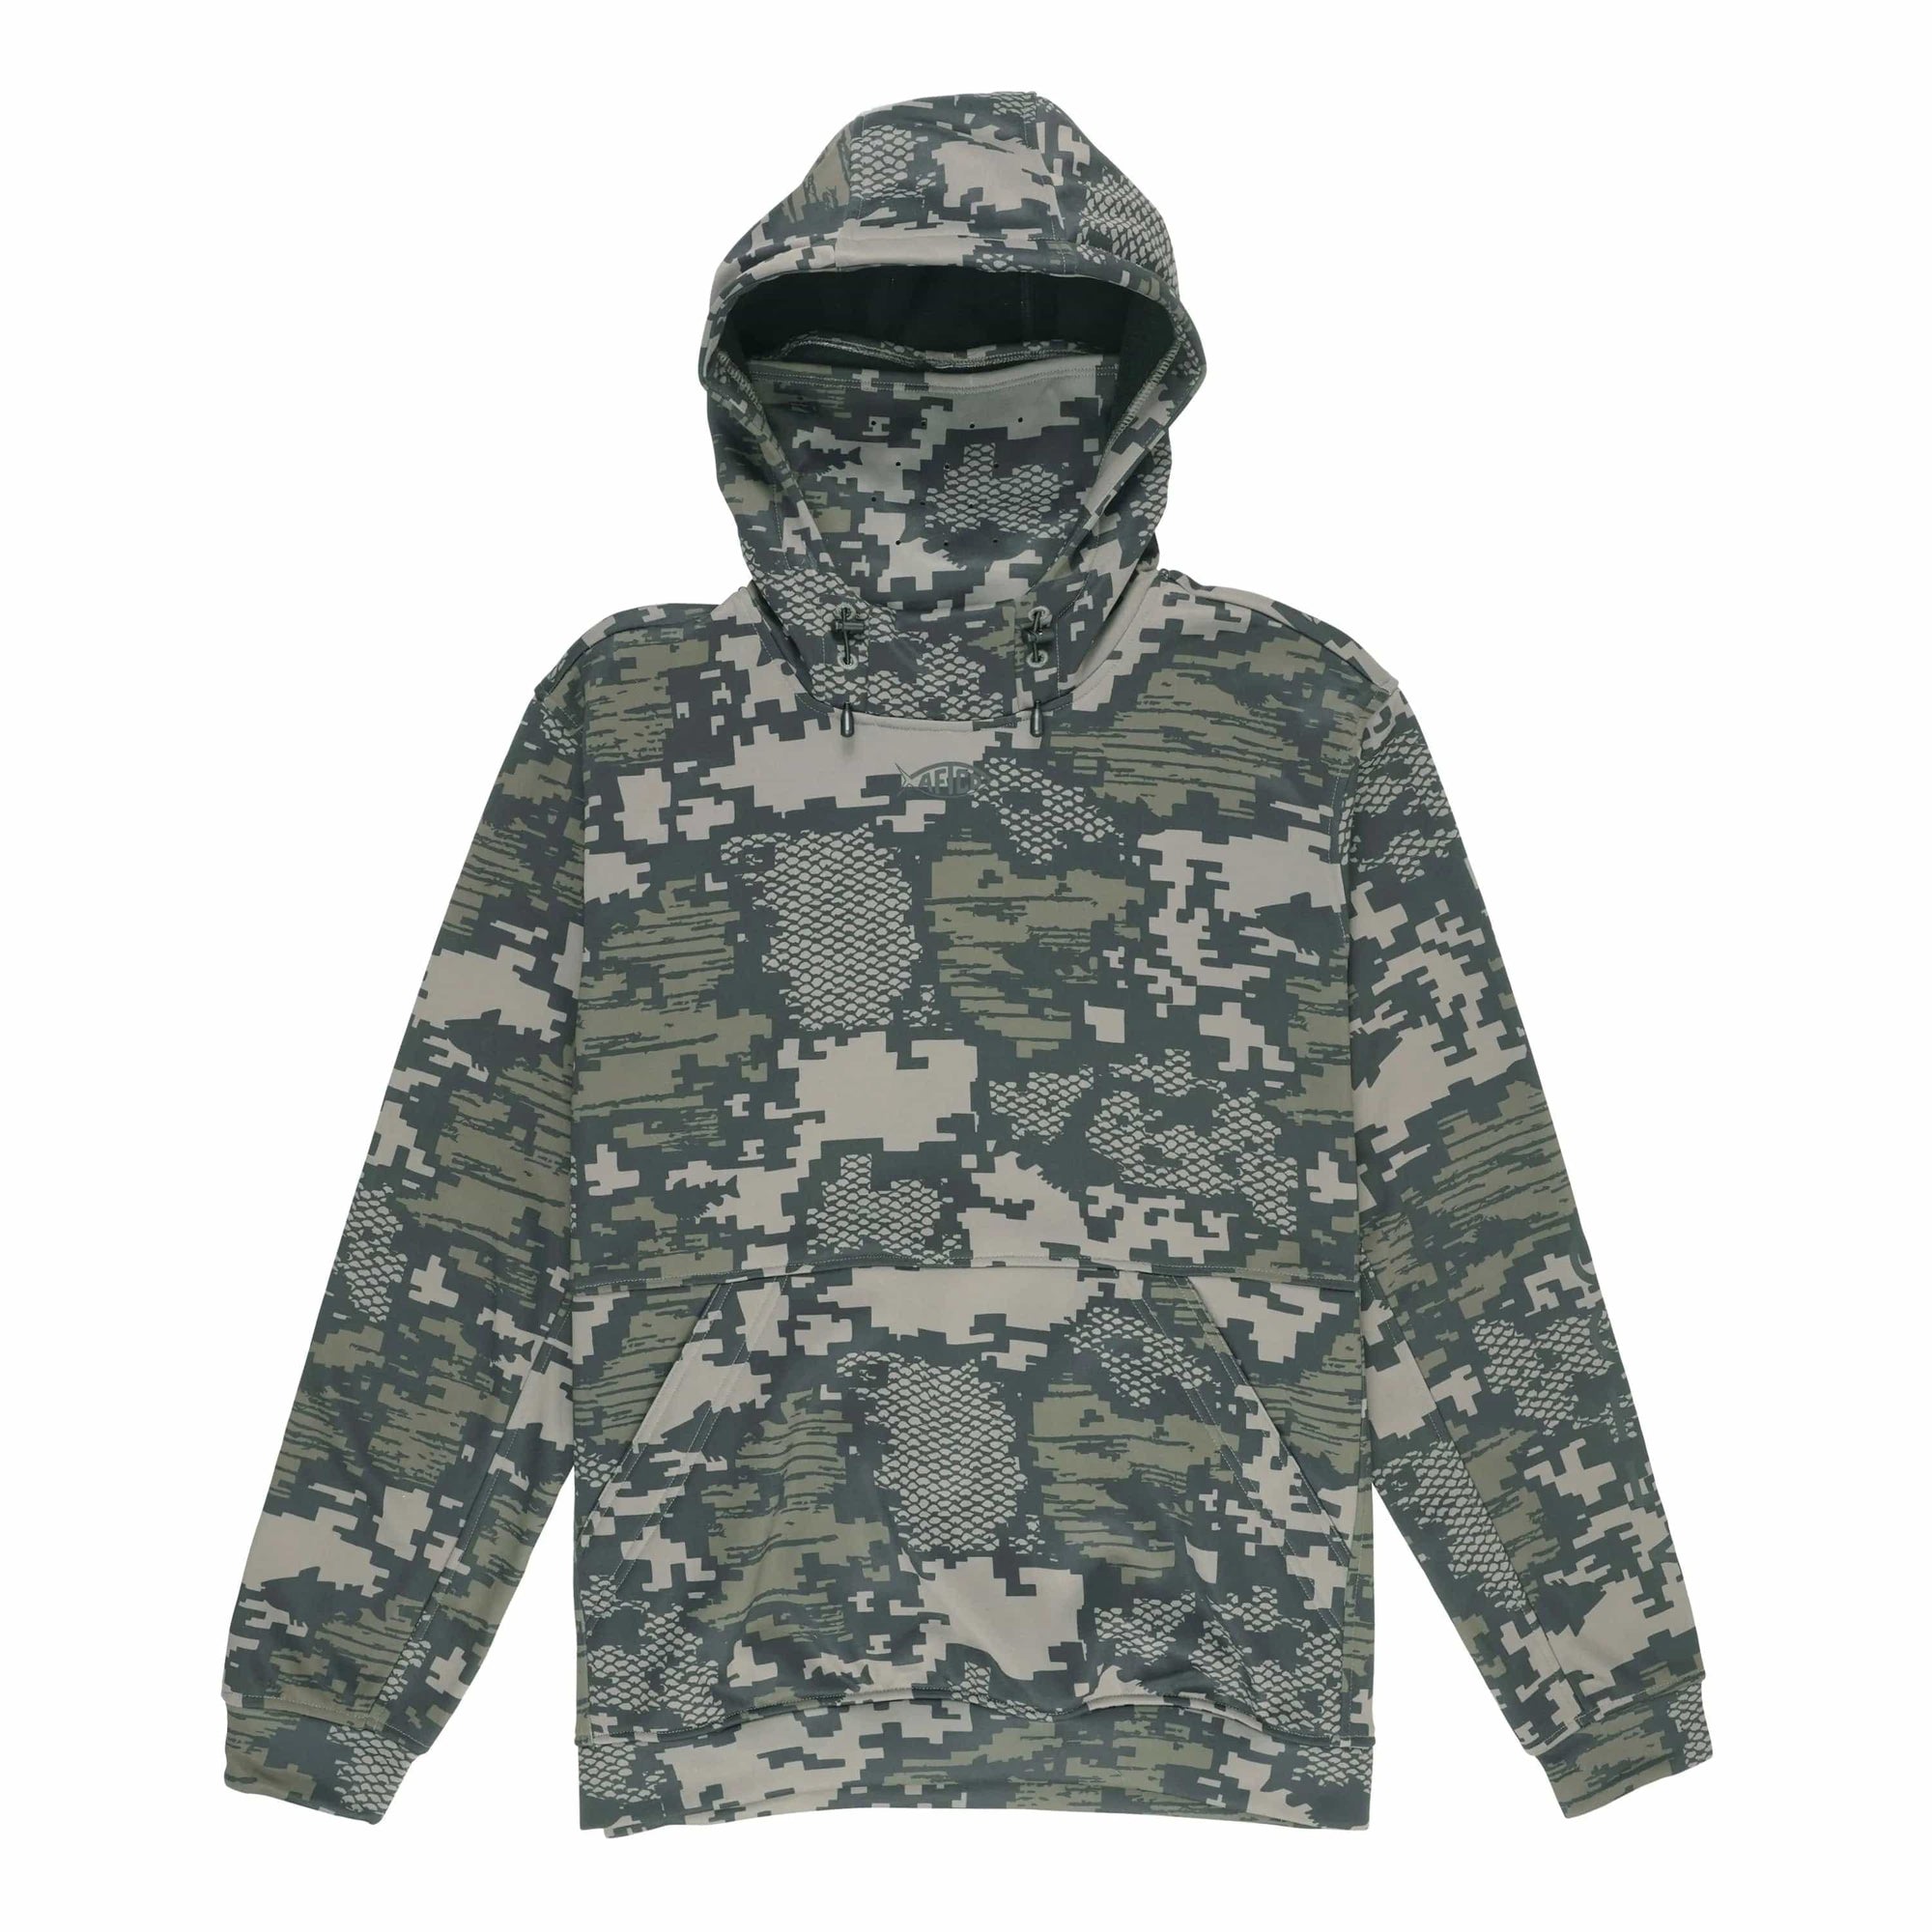 Aftco Reaper Tactical Camo Sweatshirt